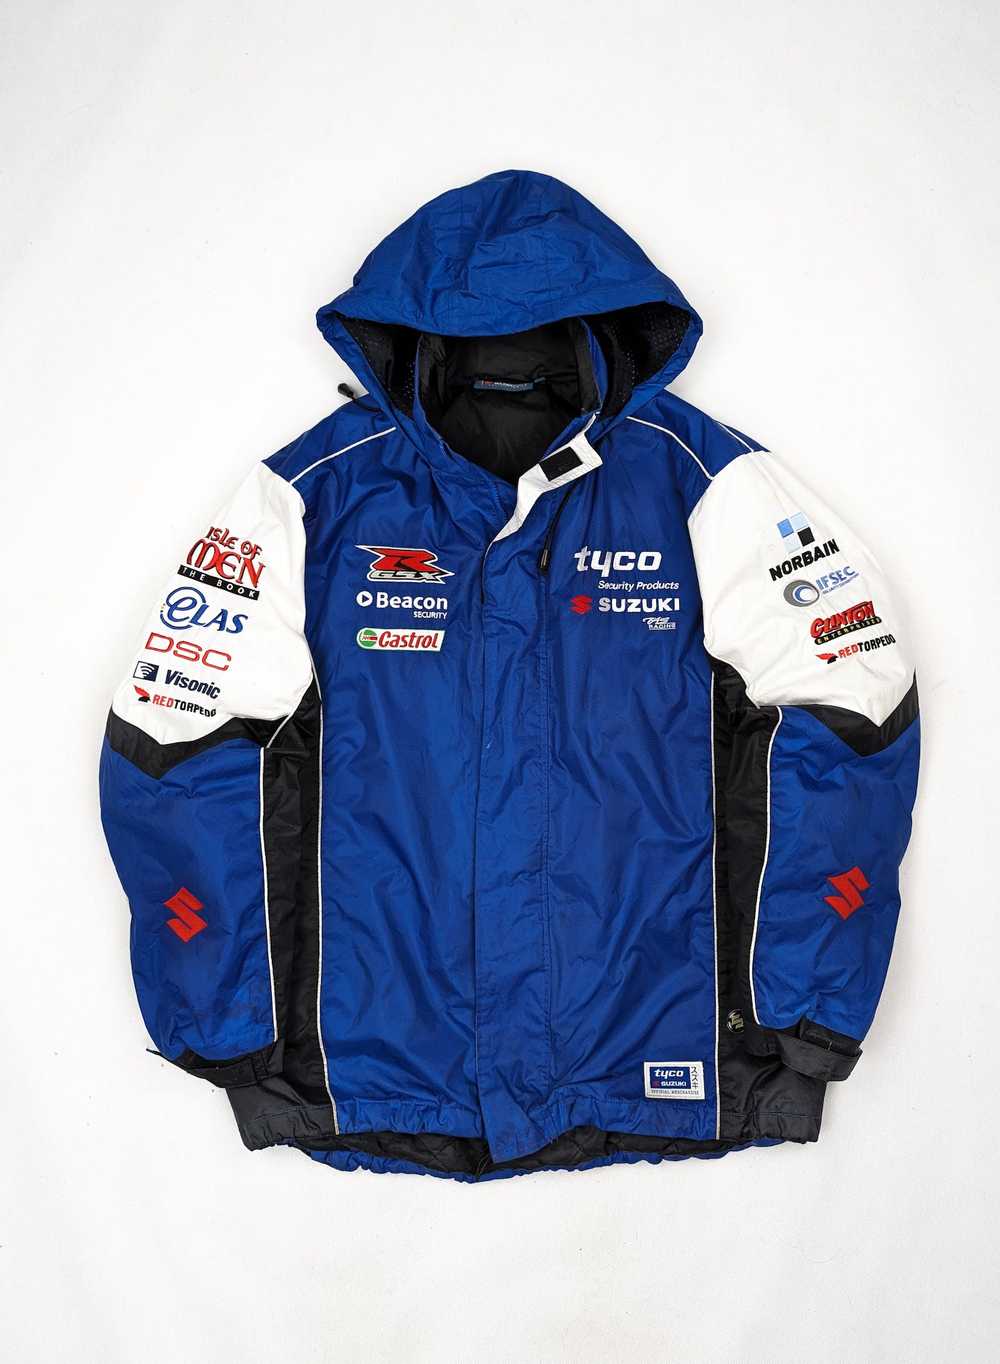 Racing Suzuki tyco rare racing winter jacket L - image 1